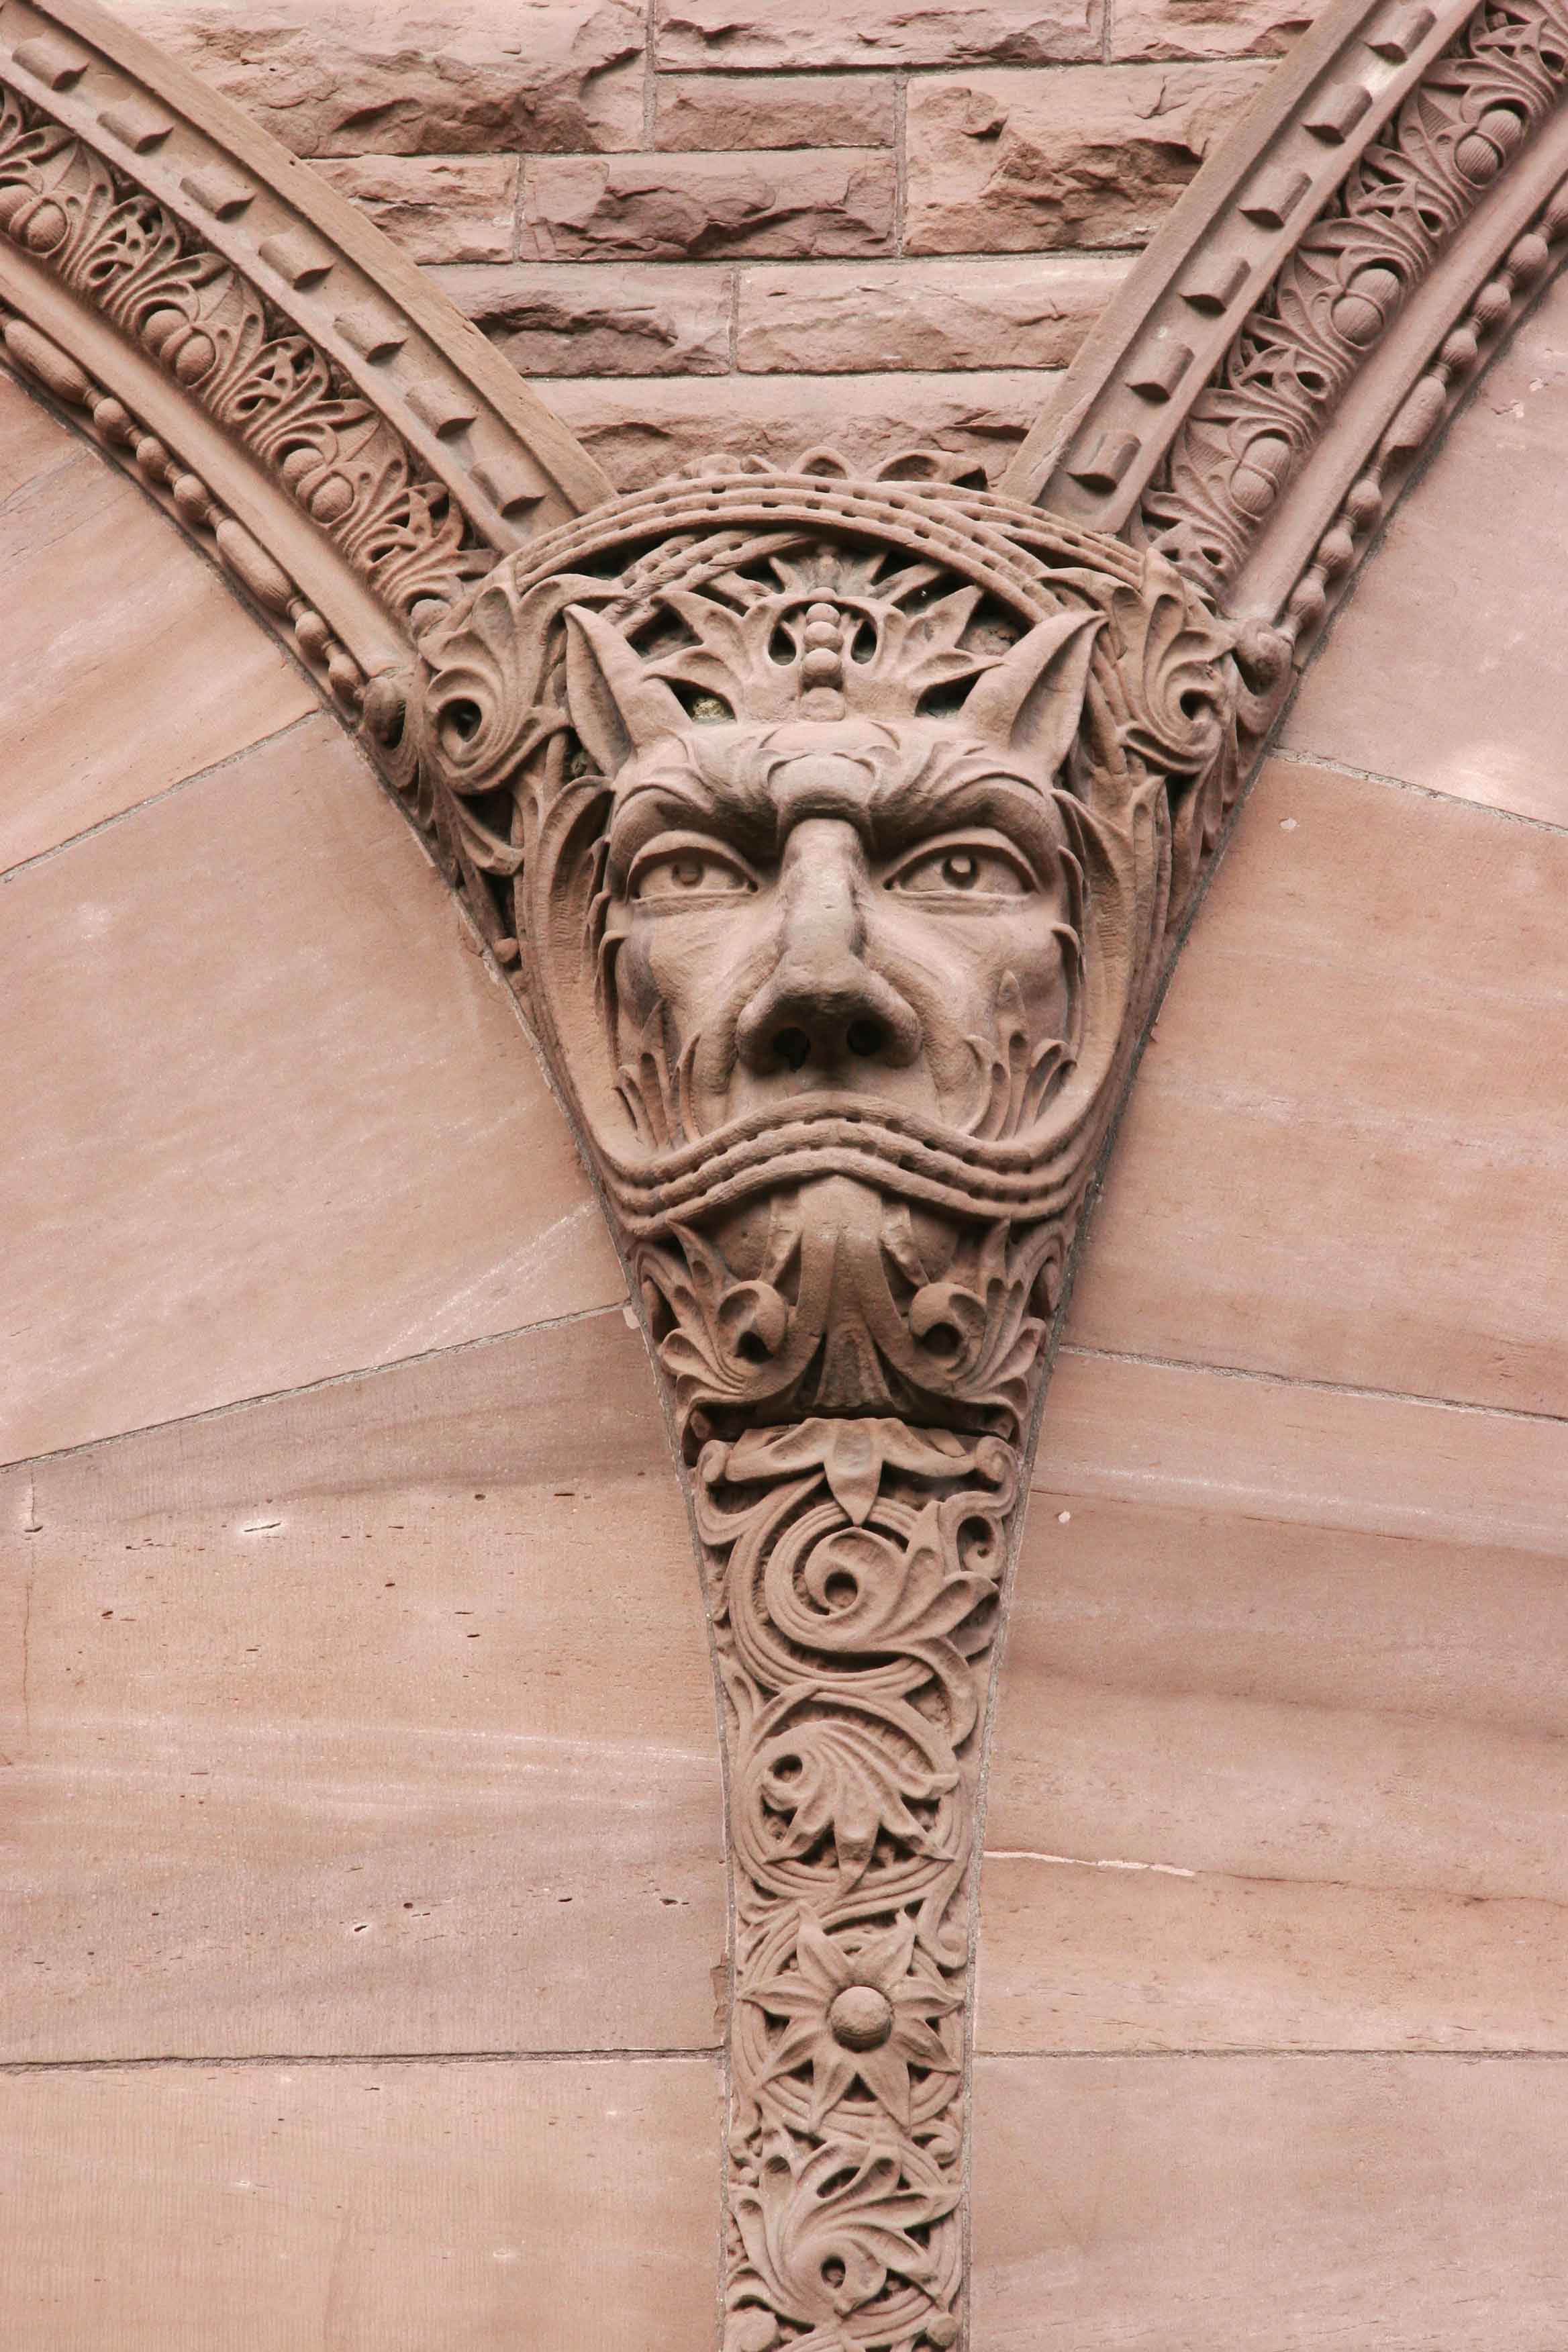 Sculpture en grès d'un visage en forme de gargouille à l'extérieur du bâtiment législatif